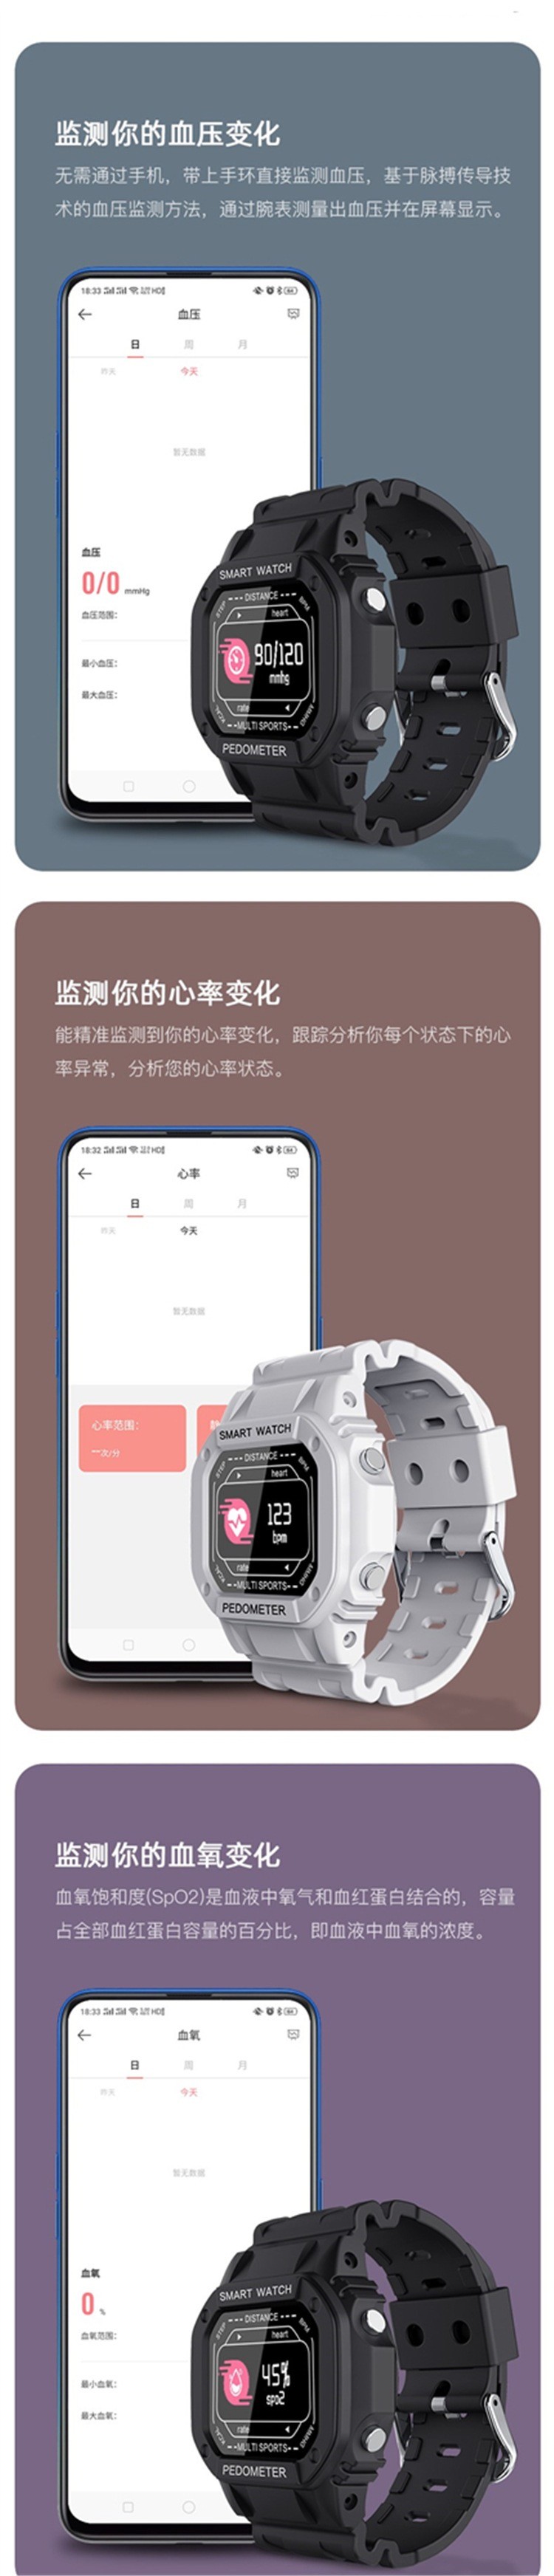 N50智能彩屏手表户外运动心率血压监测电话信息提醒防水详情图2